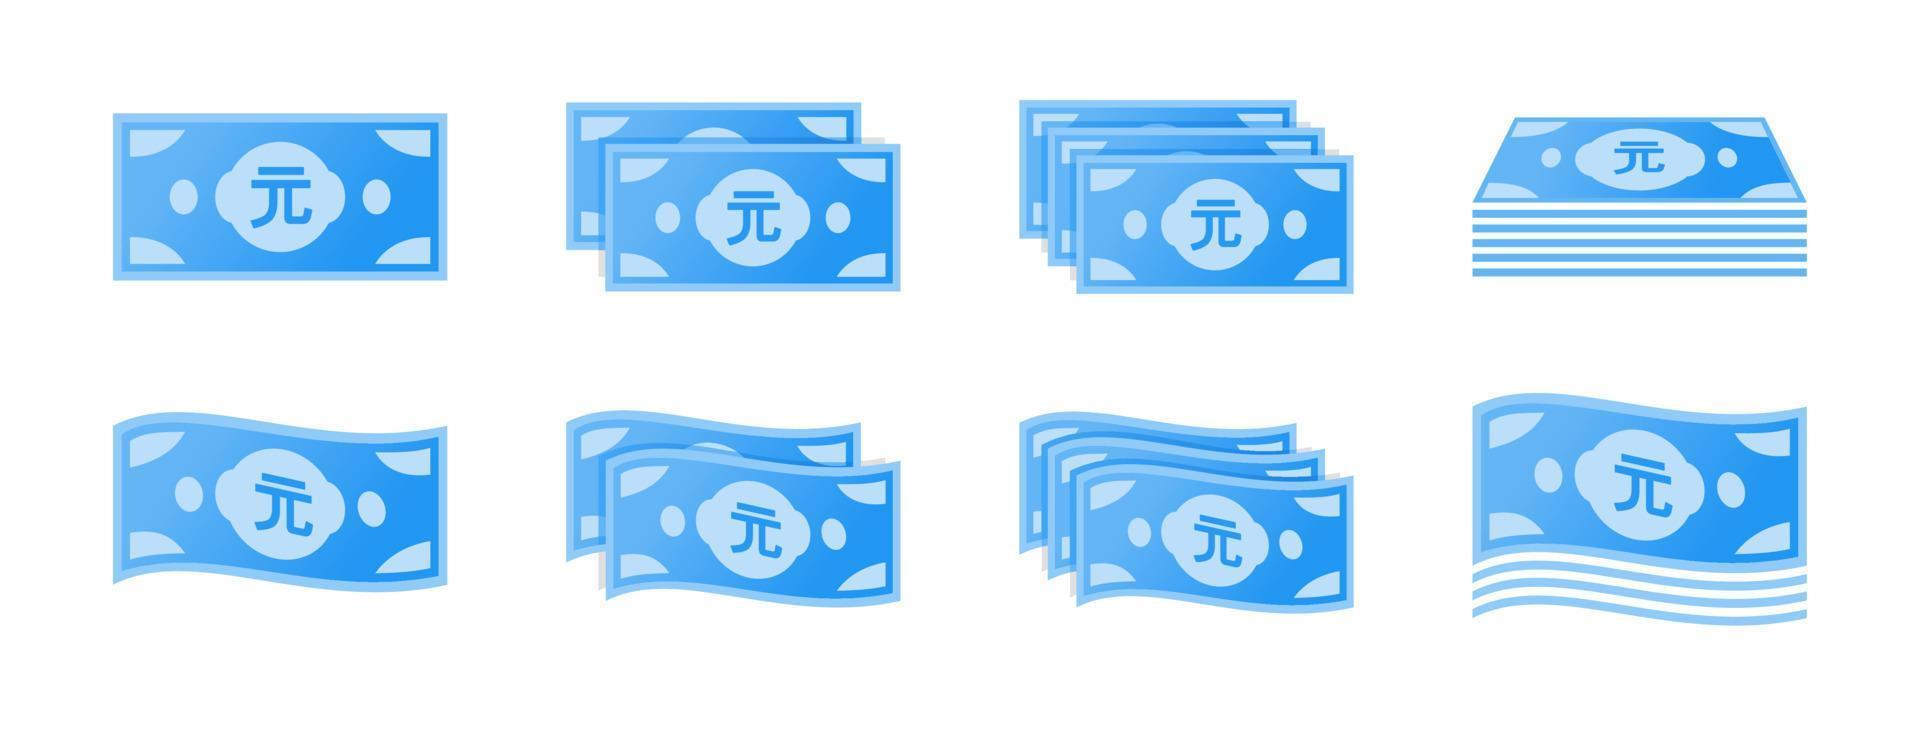 conjunto de ícones de notas de dólar de taiwan vetor